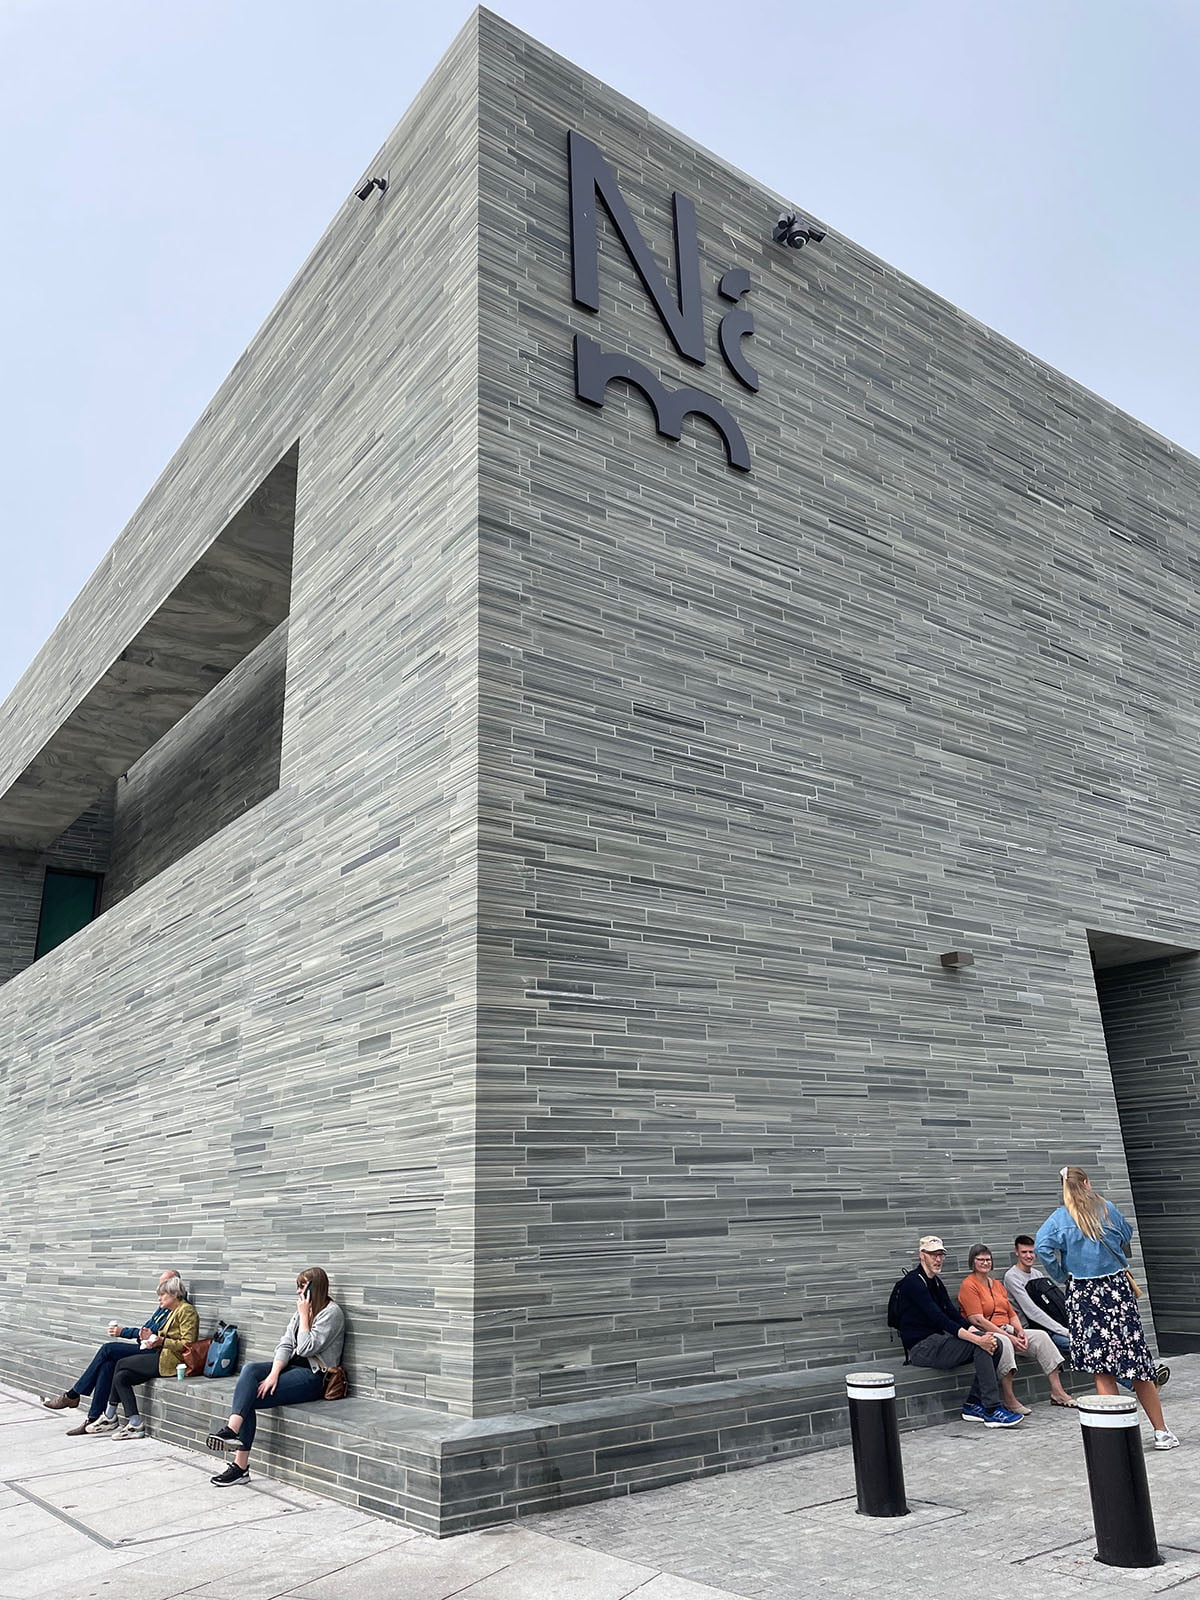 Bâtiment du musée national à Oslo, Norvège